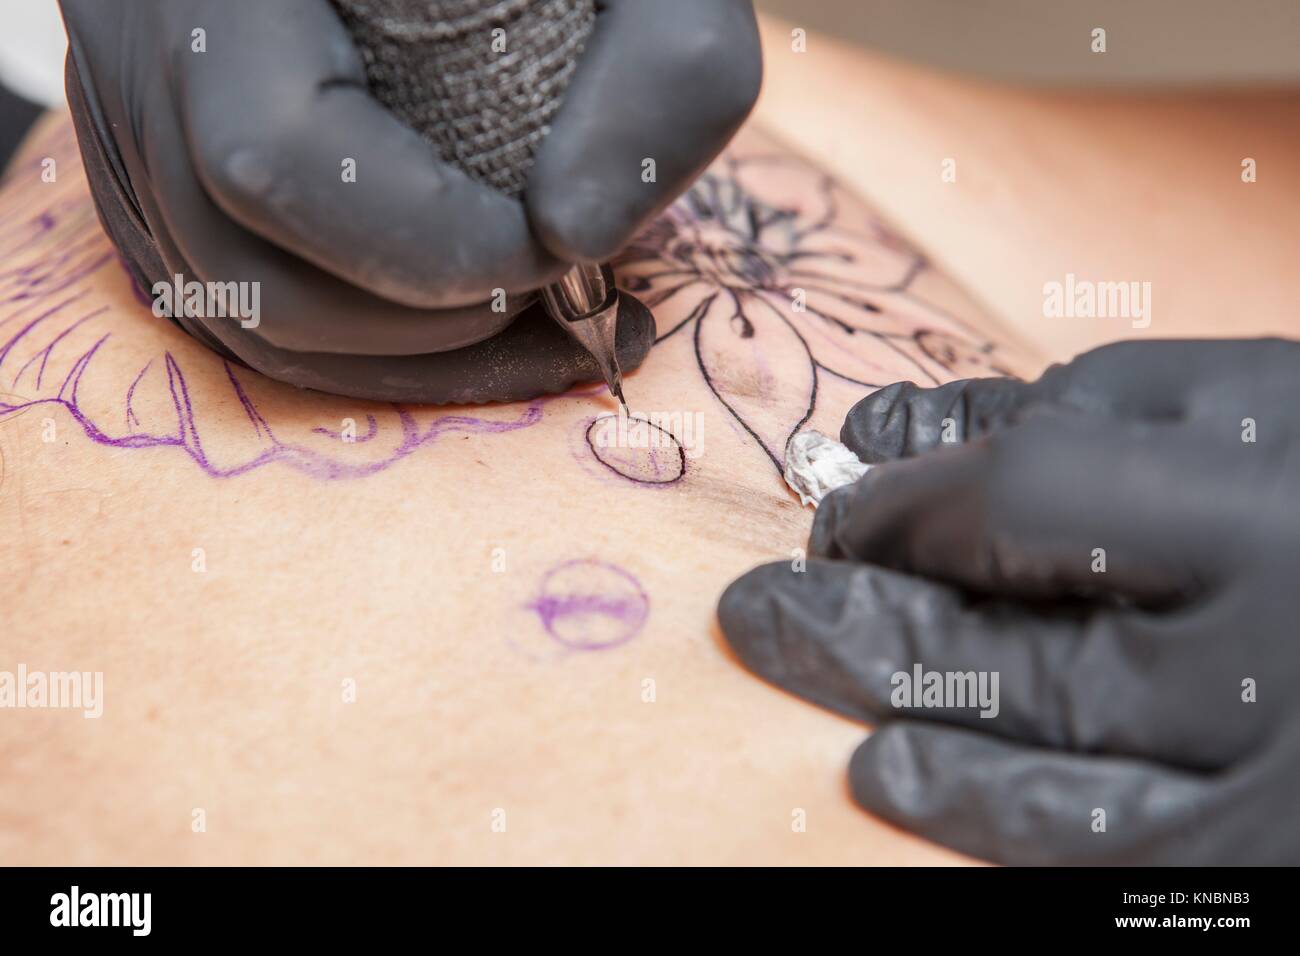 Tattoo machine immagini e fotografie stock ad alta risoluzione - Alamy